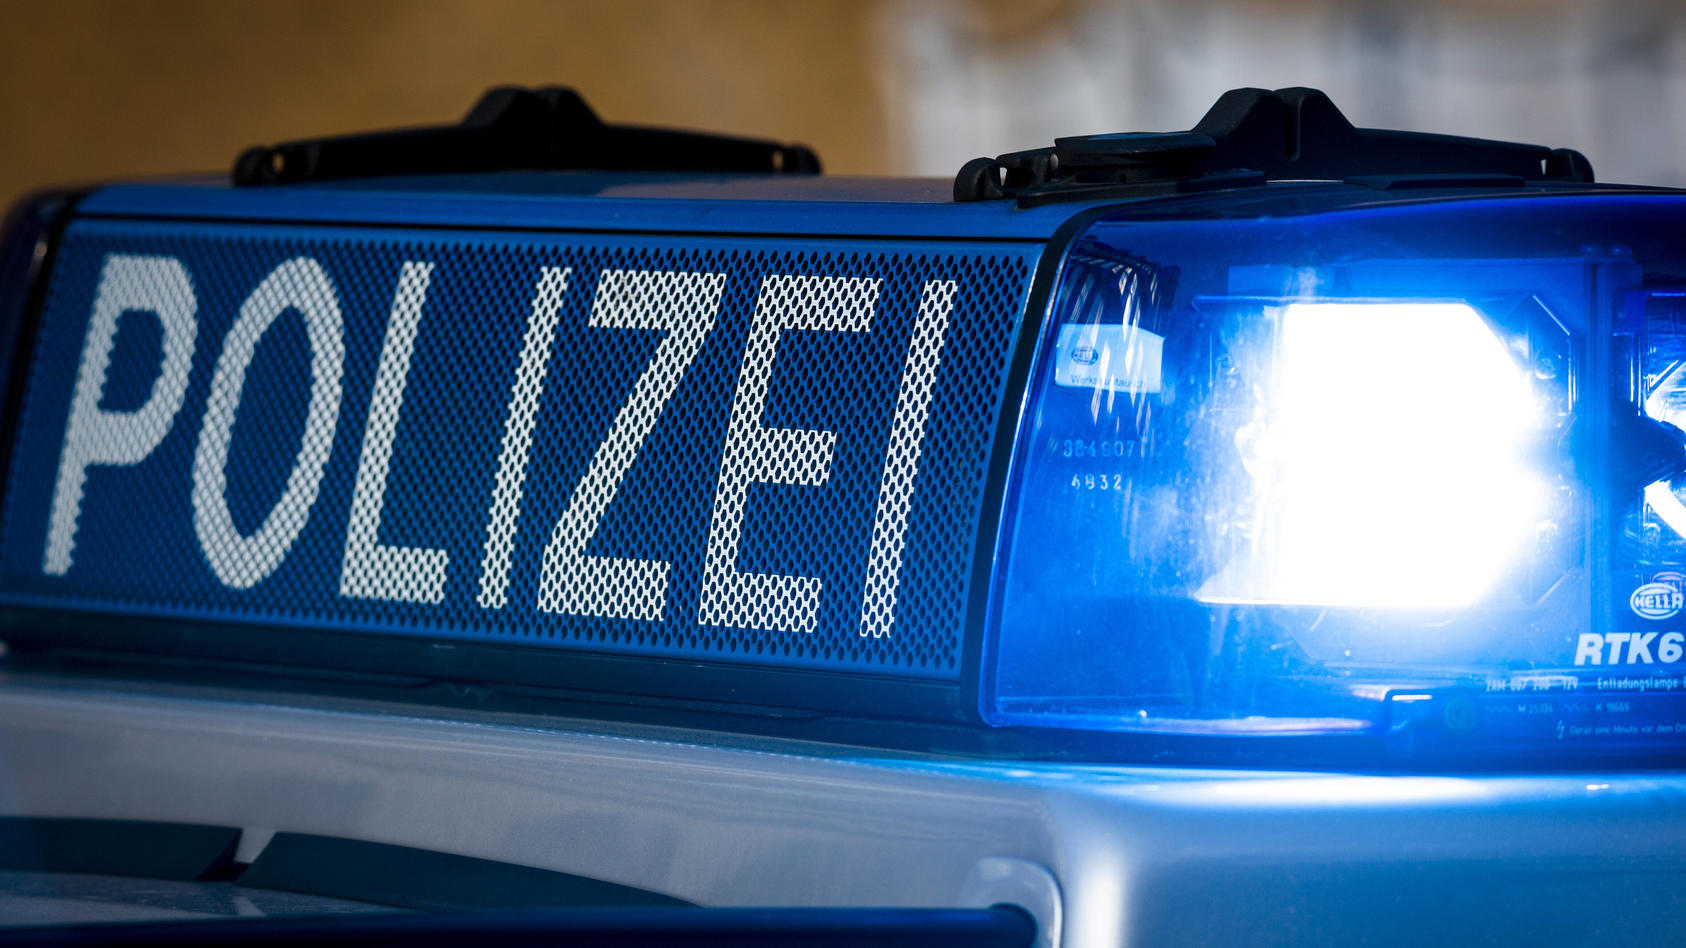 Blaulicht eines Polizeifahrzeugs (Symbolbild)